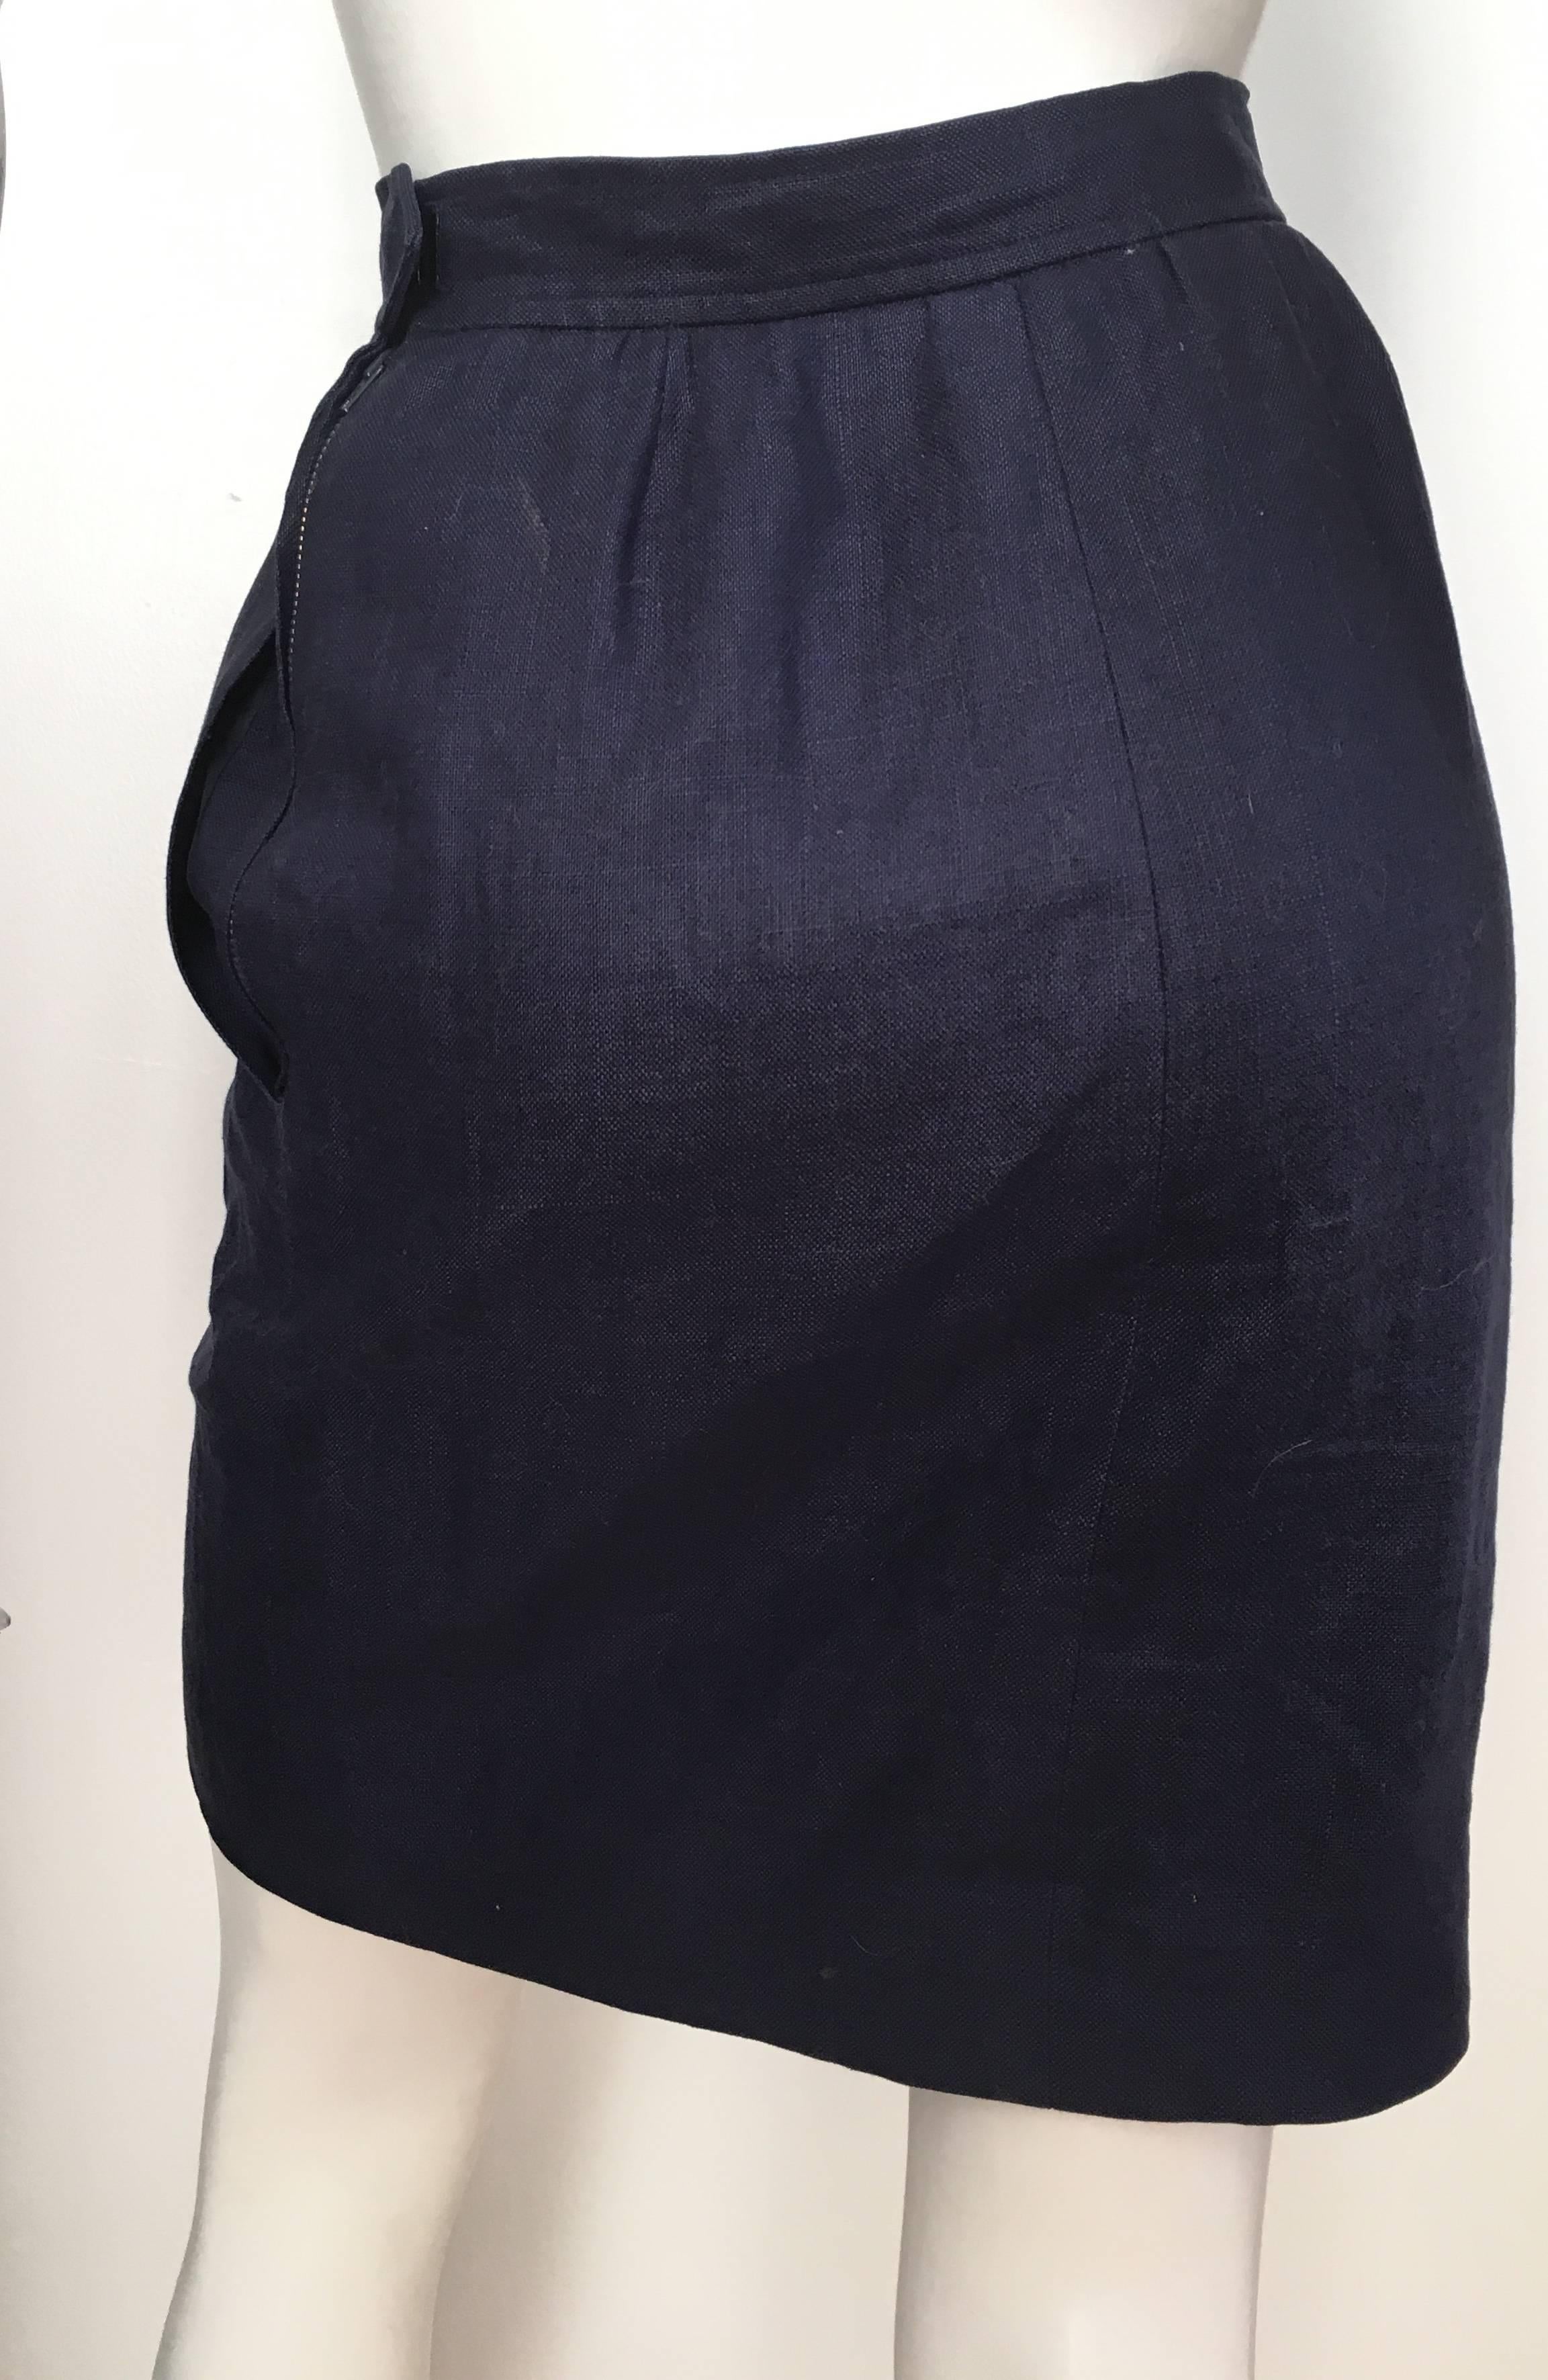 Saint Laurent Rive Gauche 1980s Navy Linen Pencil Skirt with Pockets Size 4. For Sale 1